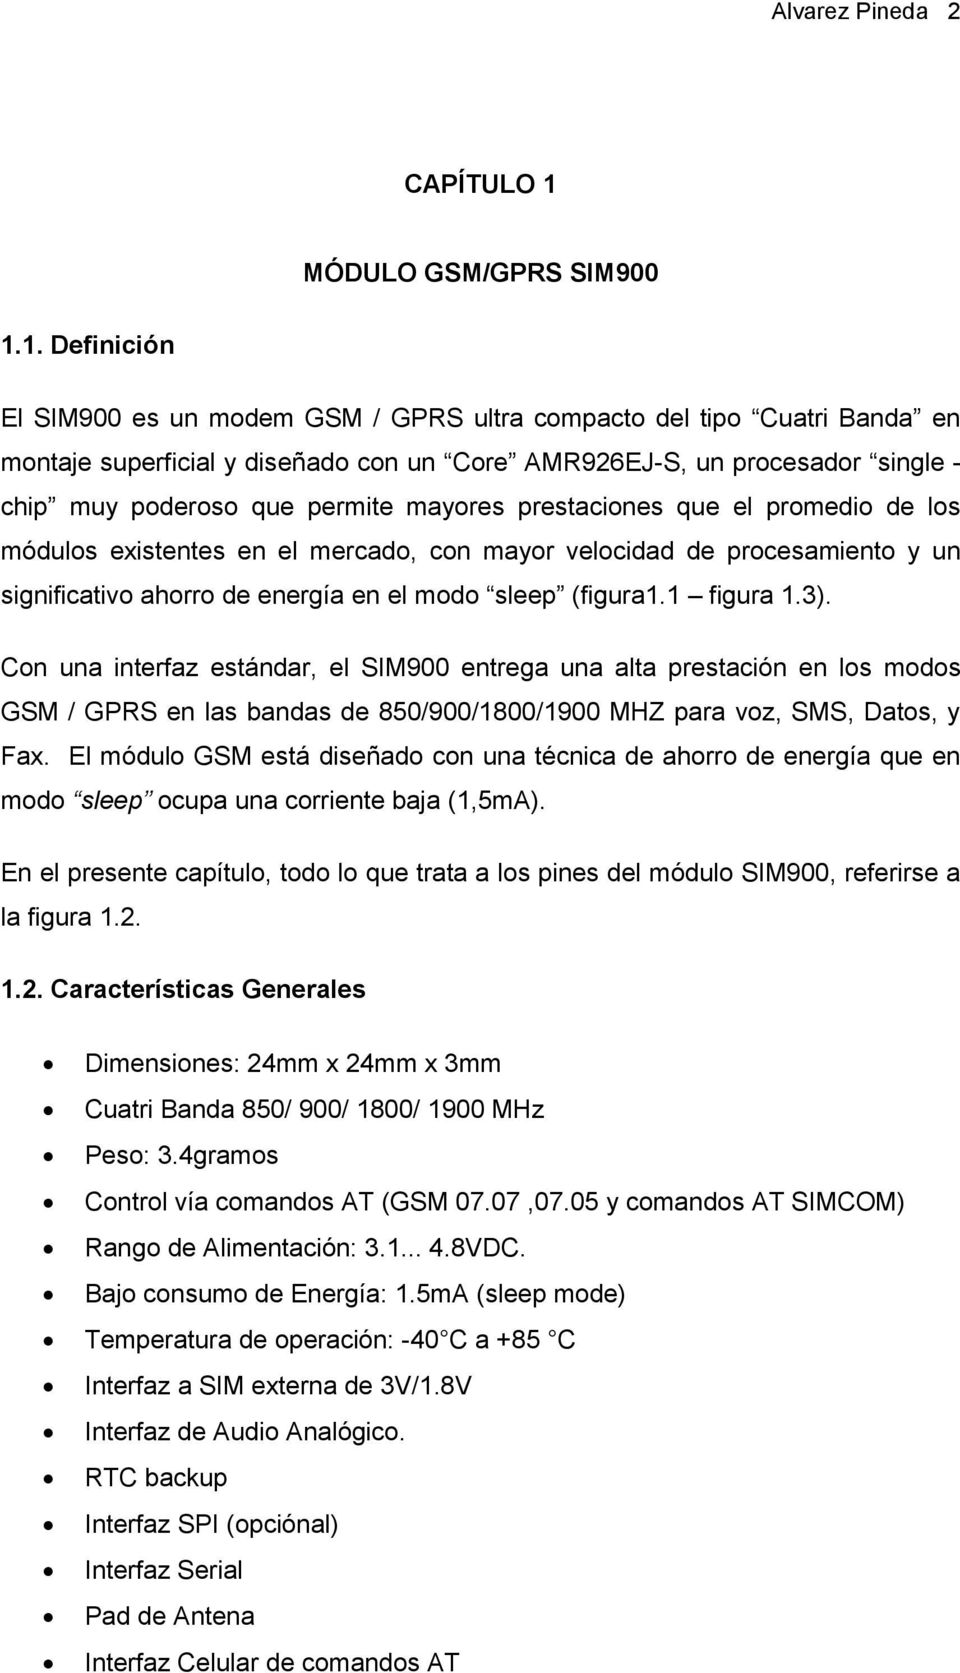 1. Definición El SIM900 es un modem GSM / GPRS ultra compacto del tipo Cuatri Banda en montaje superficial y diseñado con un Core AMR926EJ-S, un procesador single - chip muy poderoso que permite